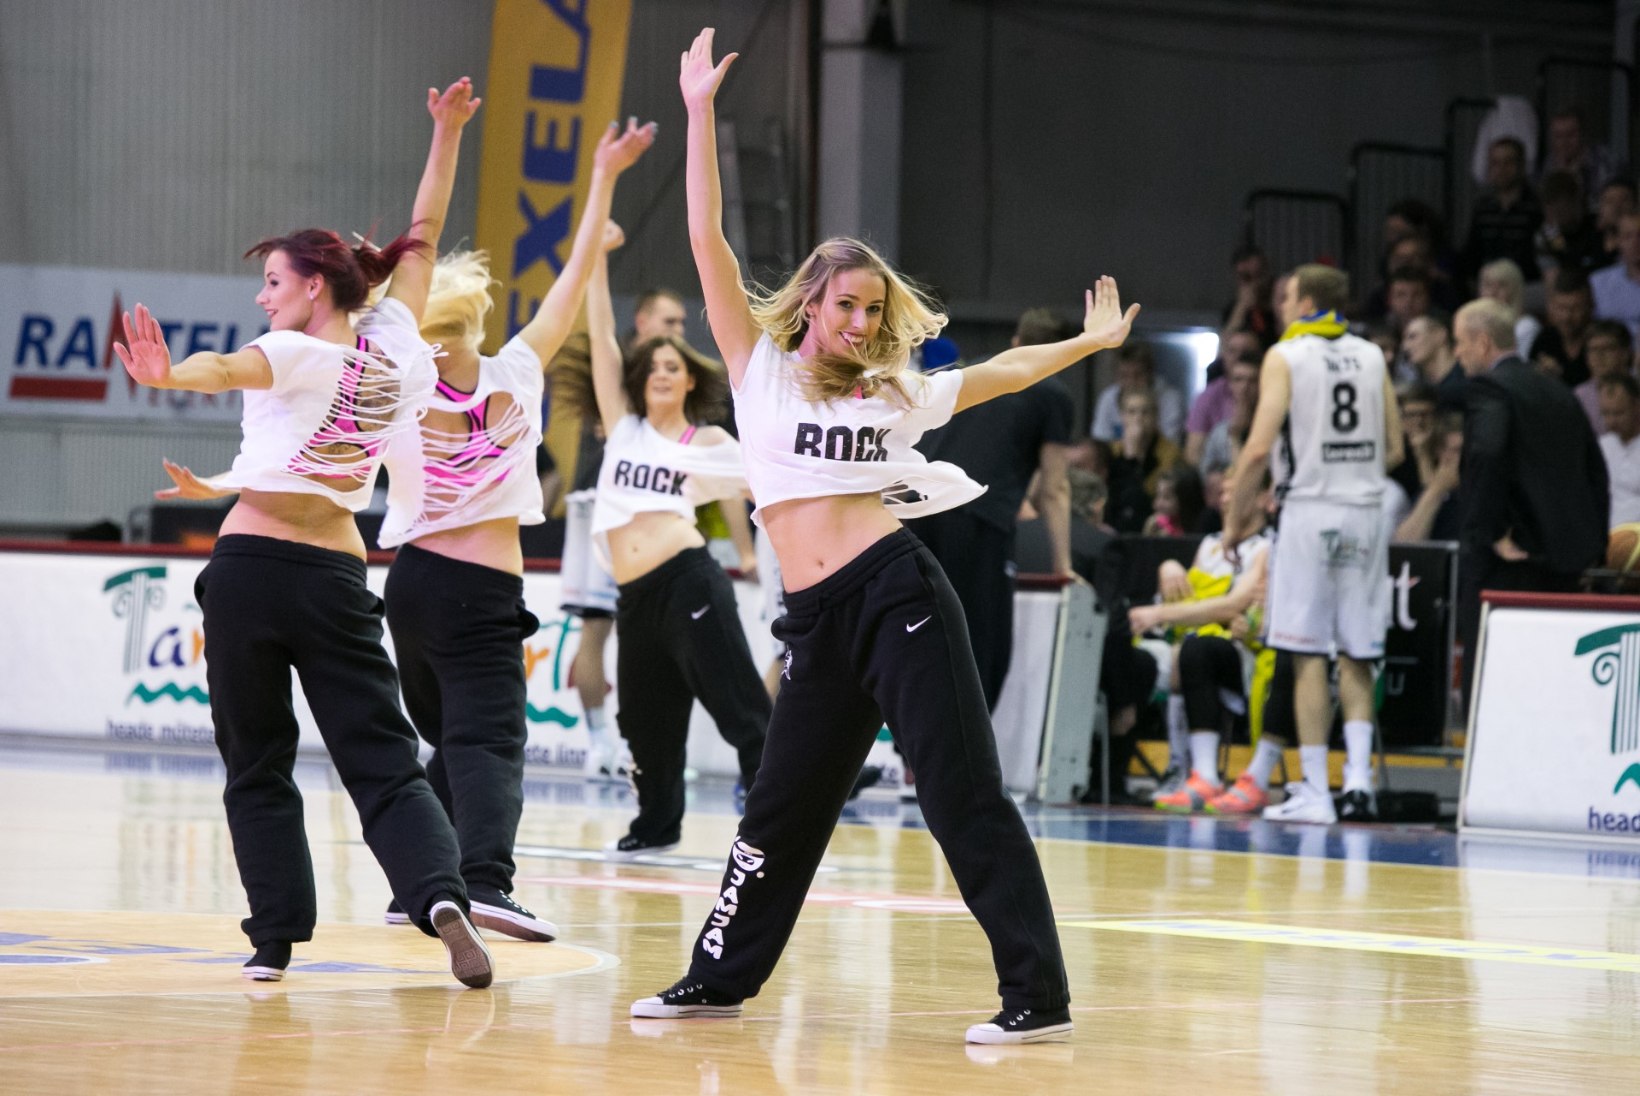 GALERII | Sulnid fotod Tartu Rocki finaalis võidule aidanud tantsutüdrukutest